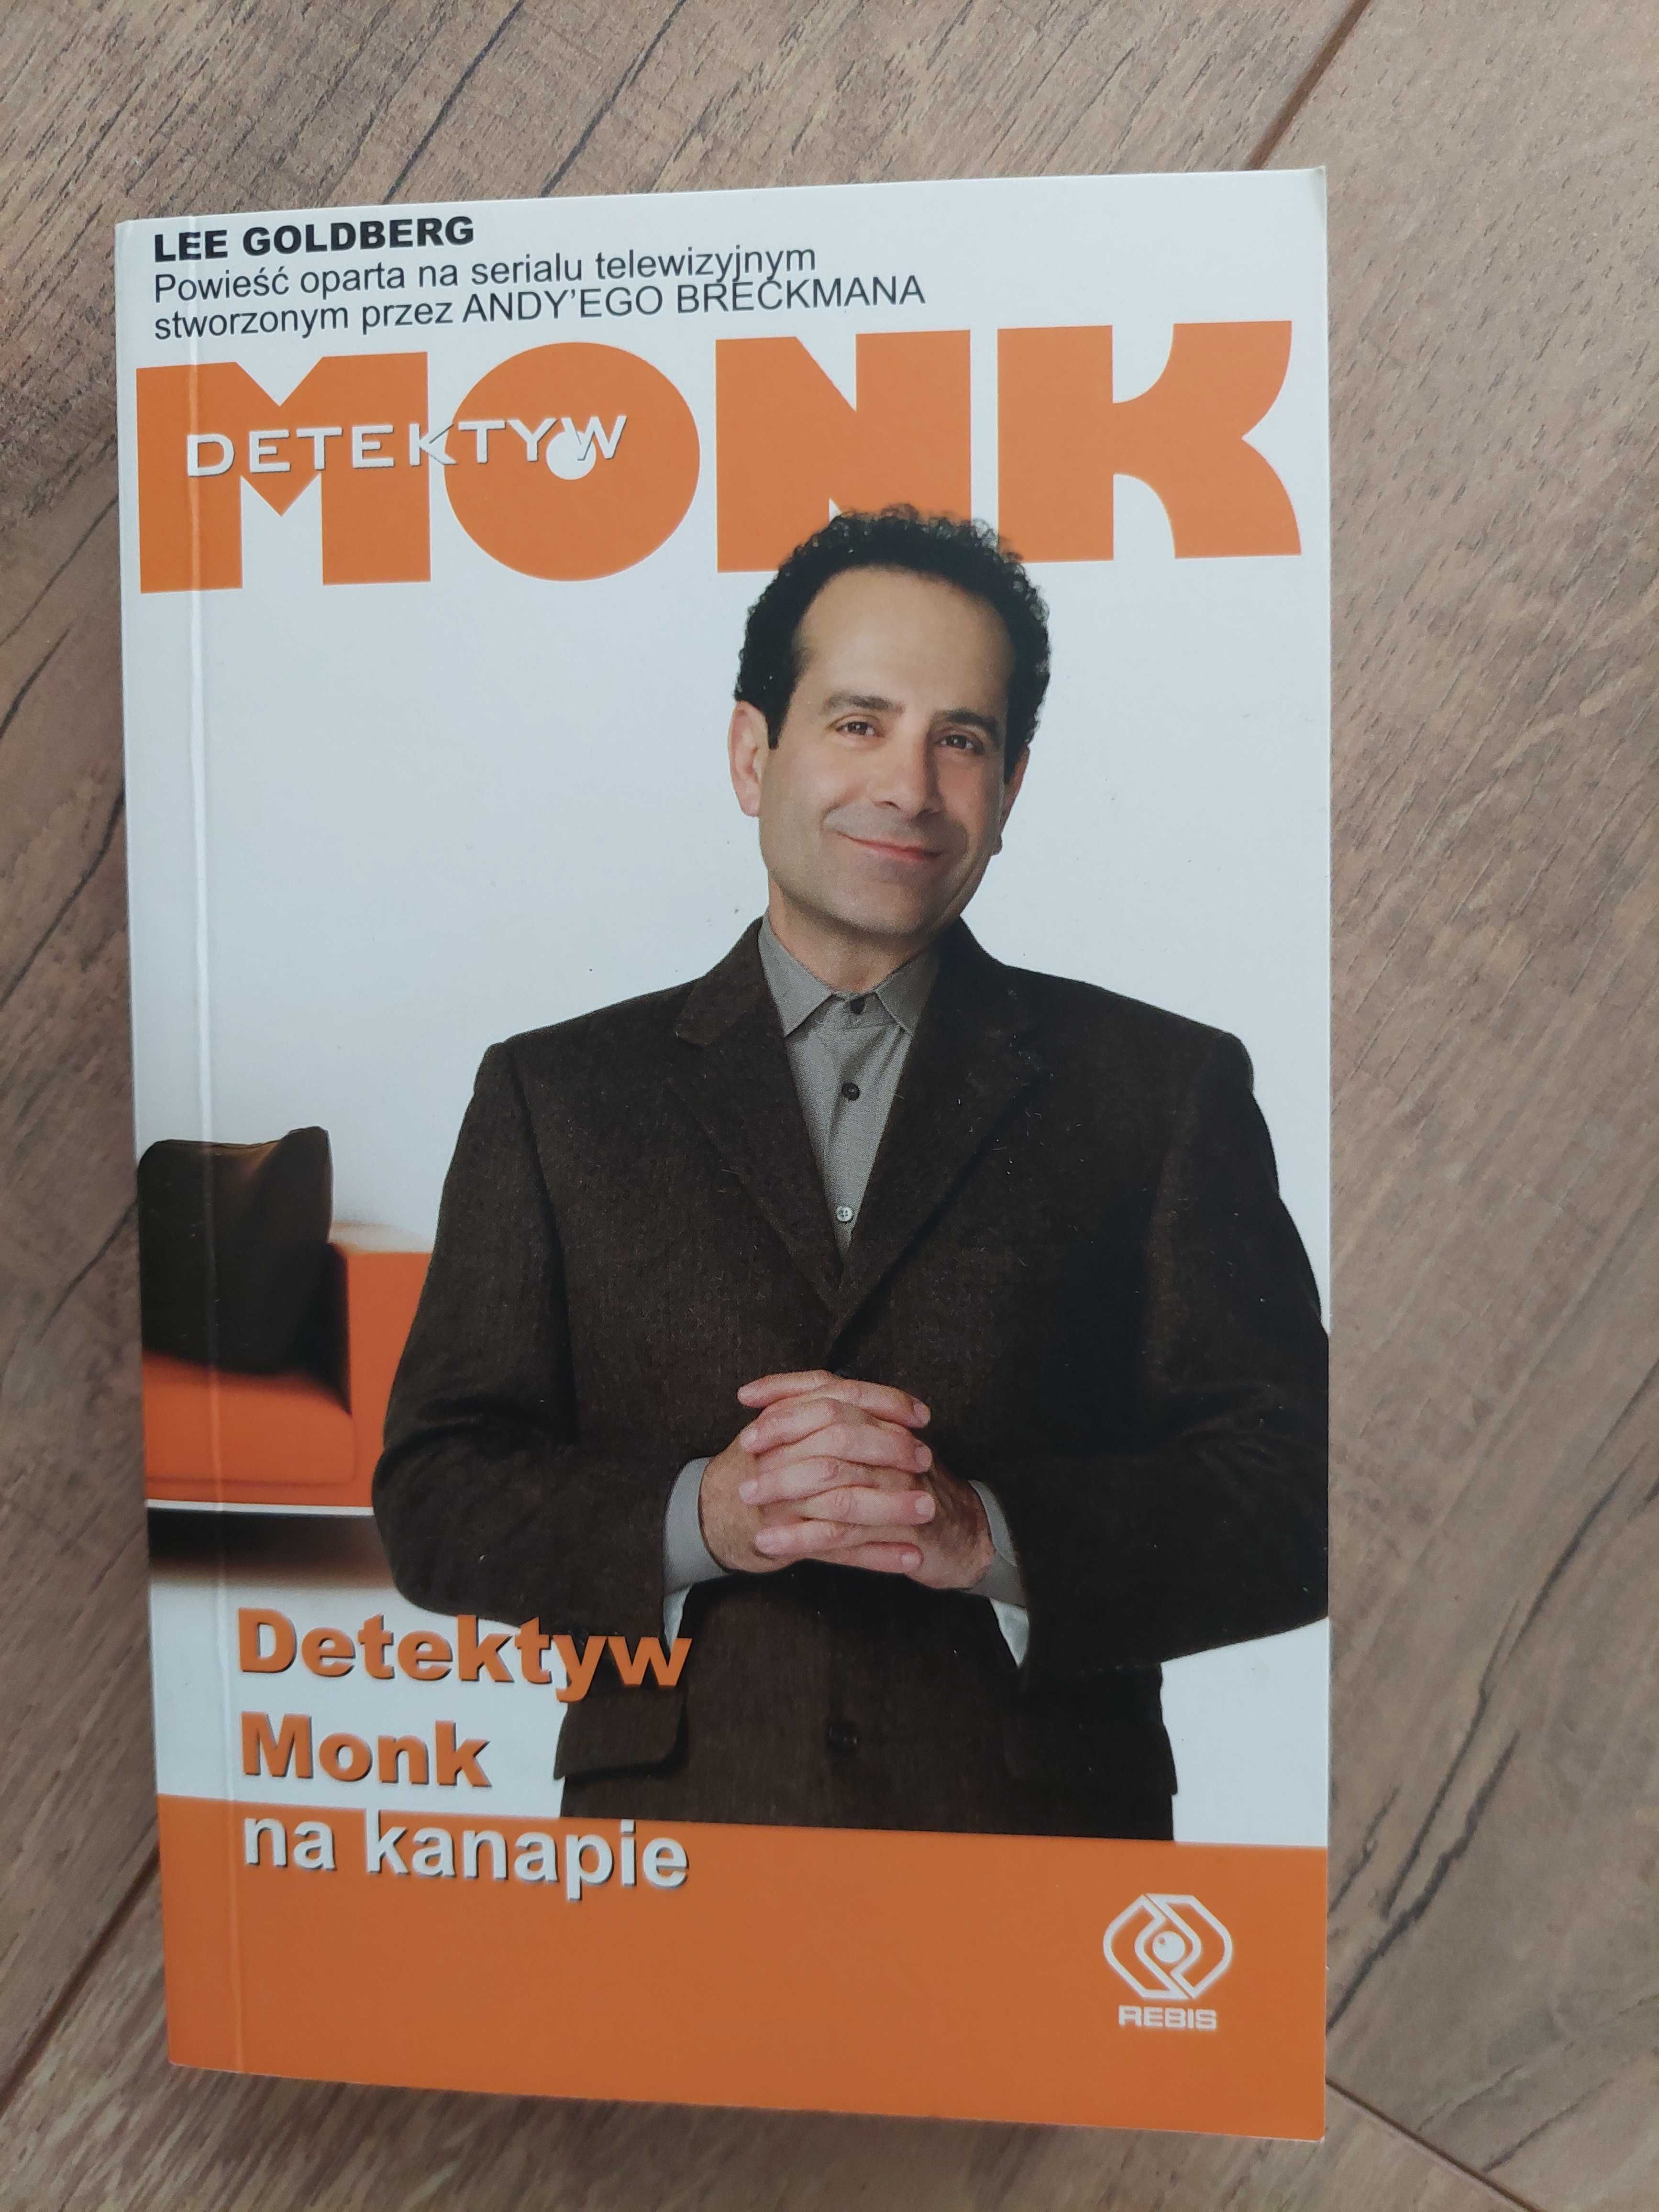 Detektyw Monk/Detektyw Monk na kanapie